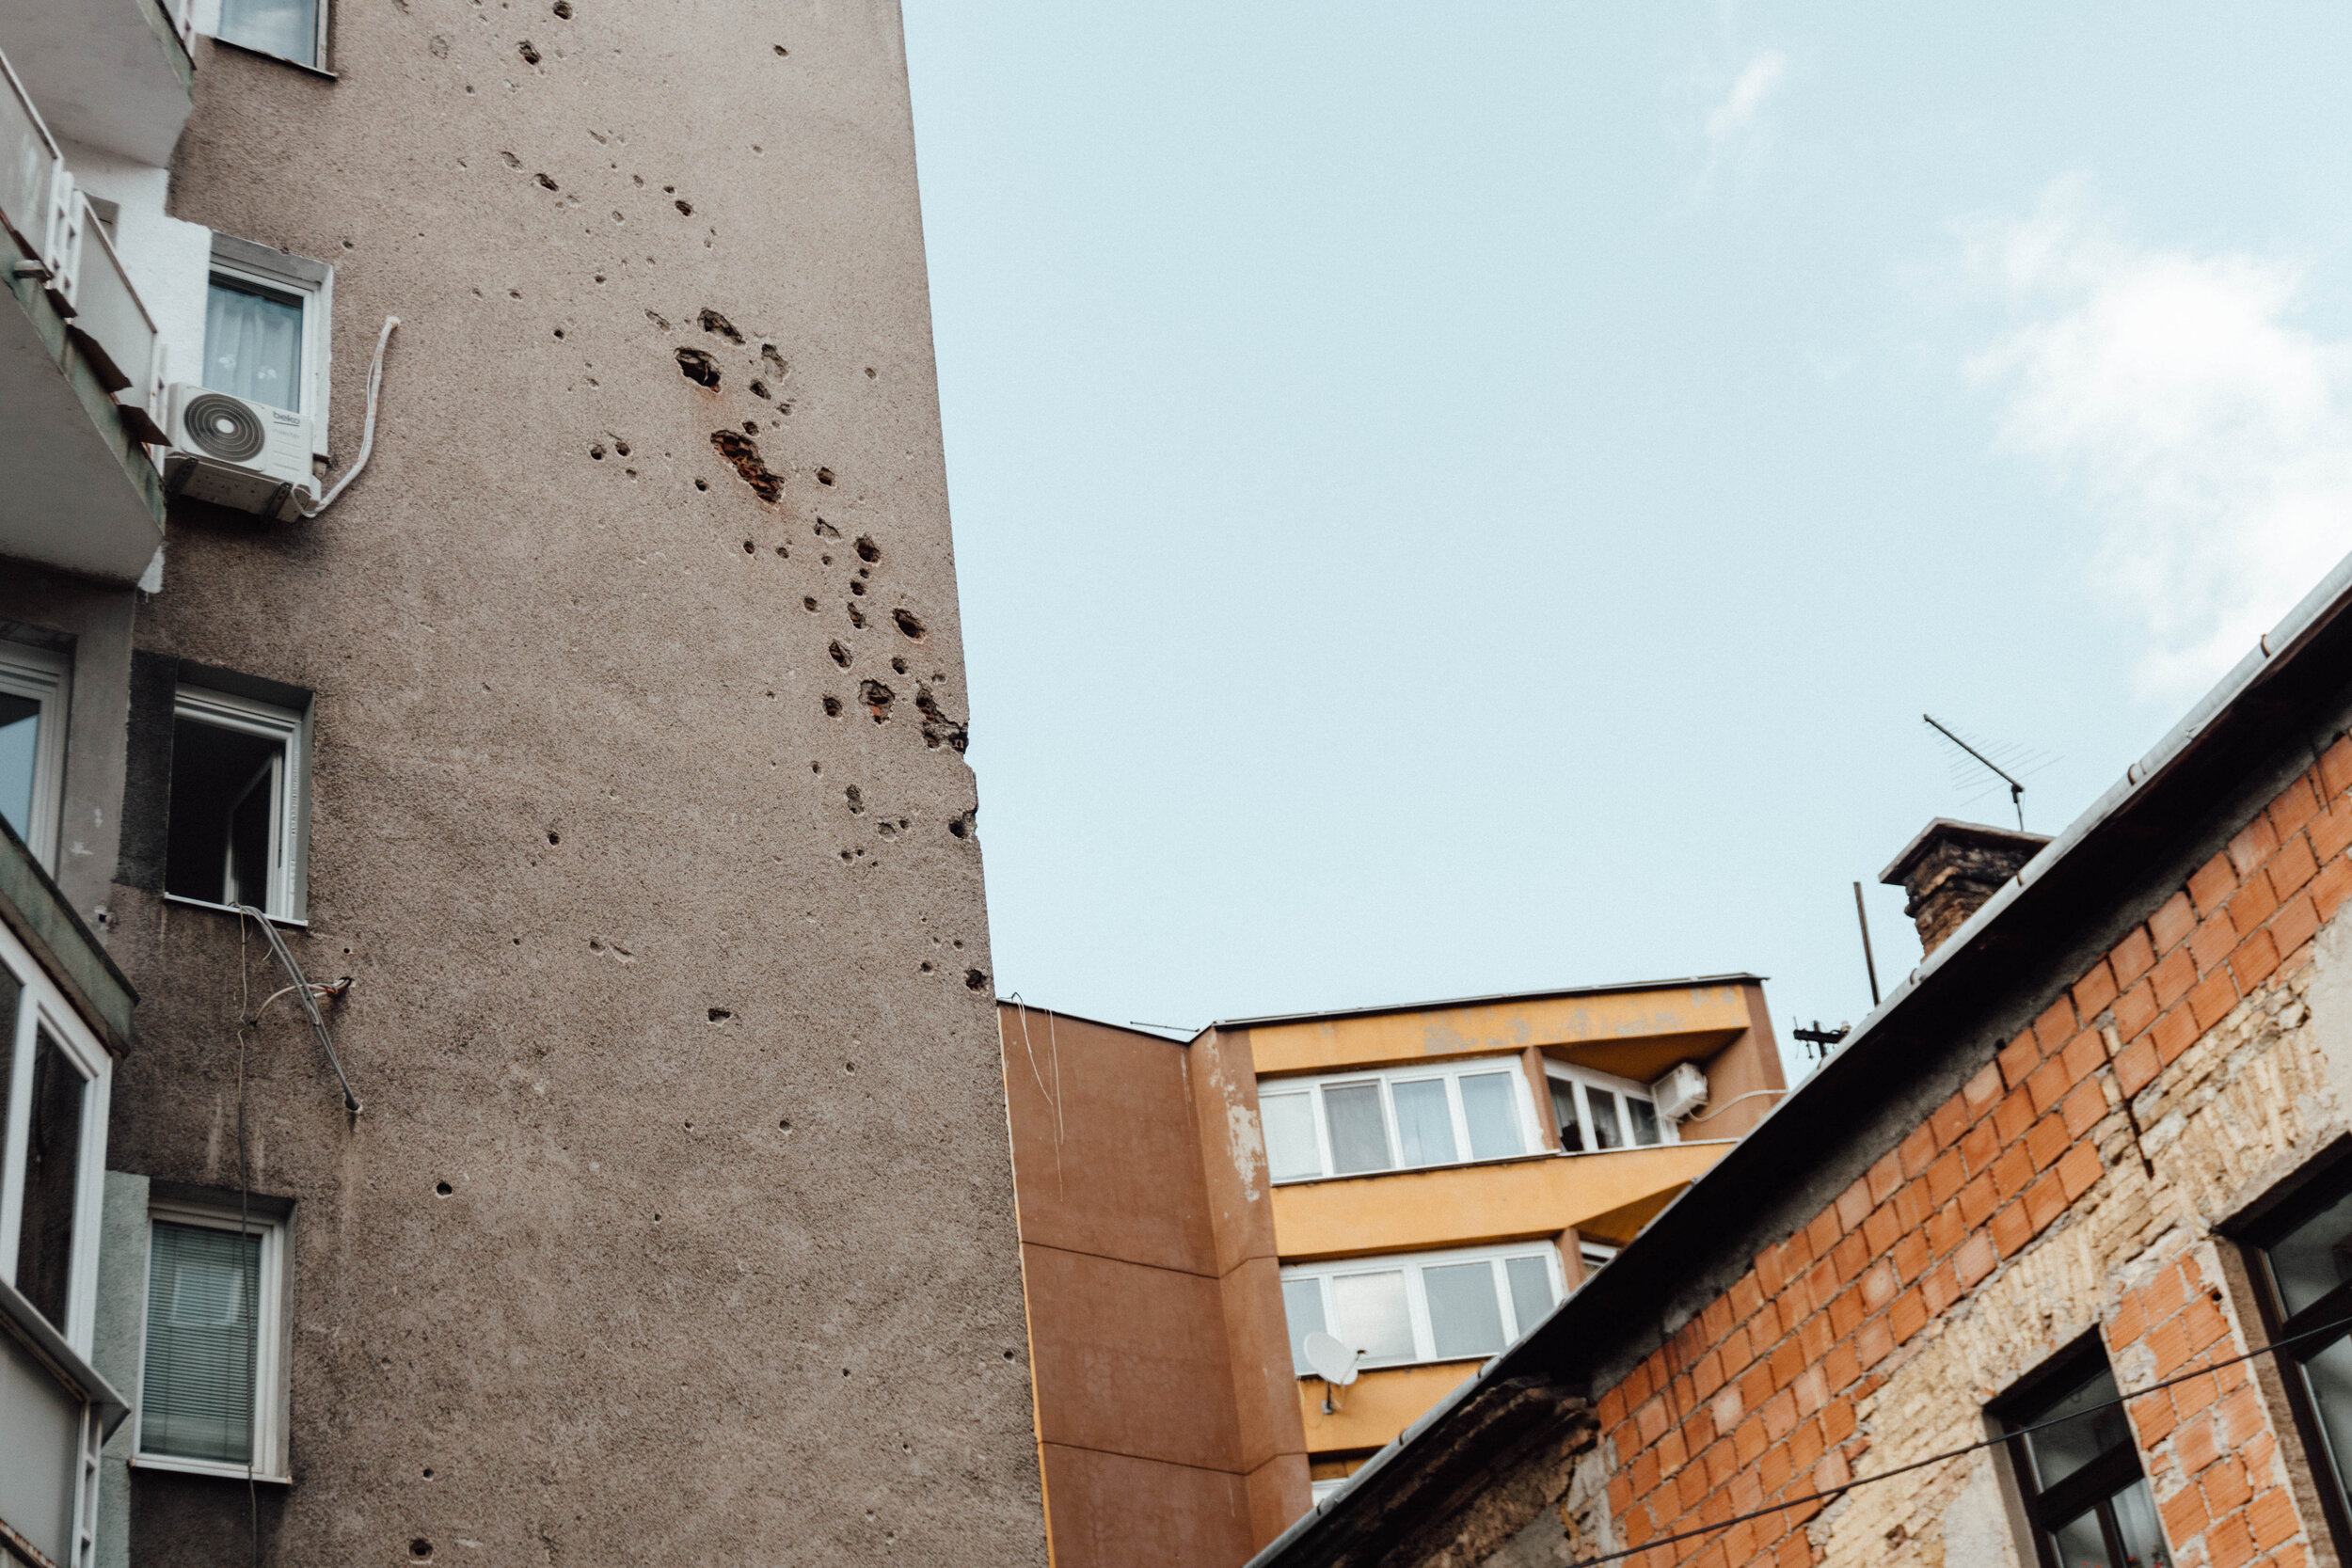 bullet holes in a building in Sarajevo, Bosnia and Herzegovina